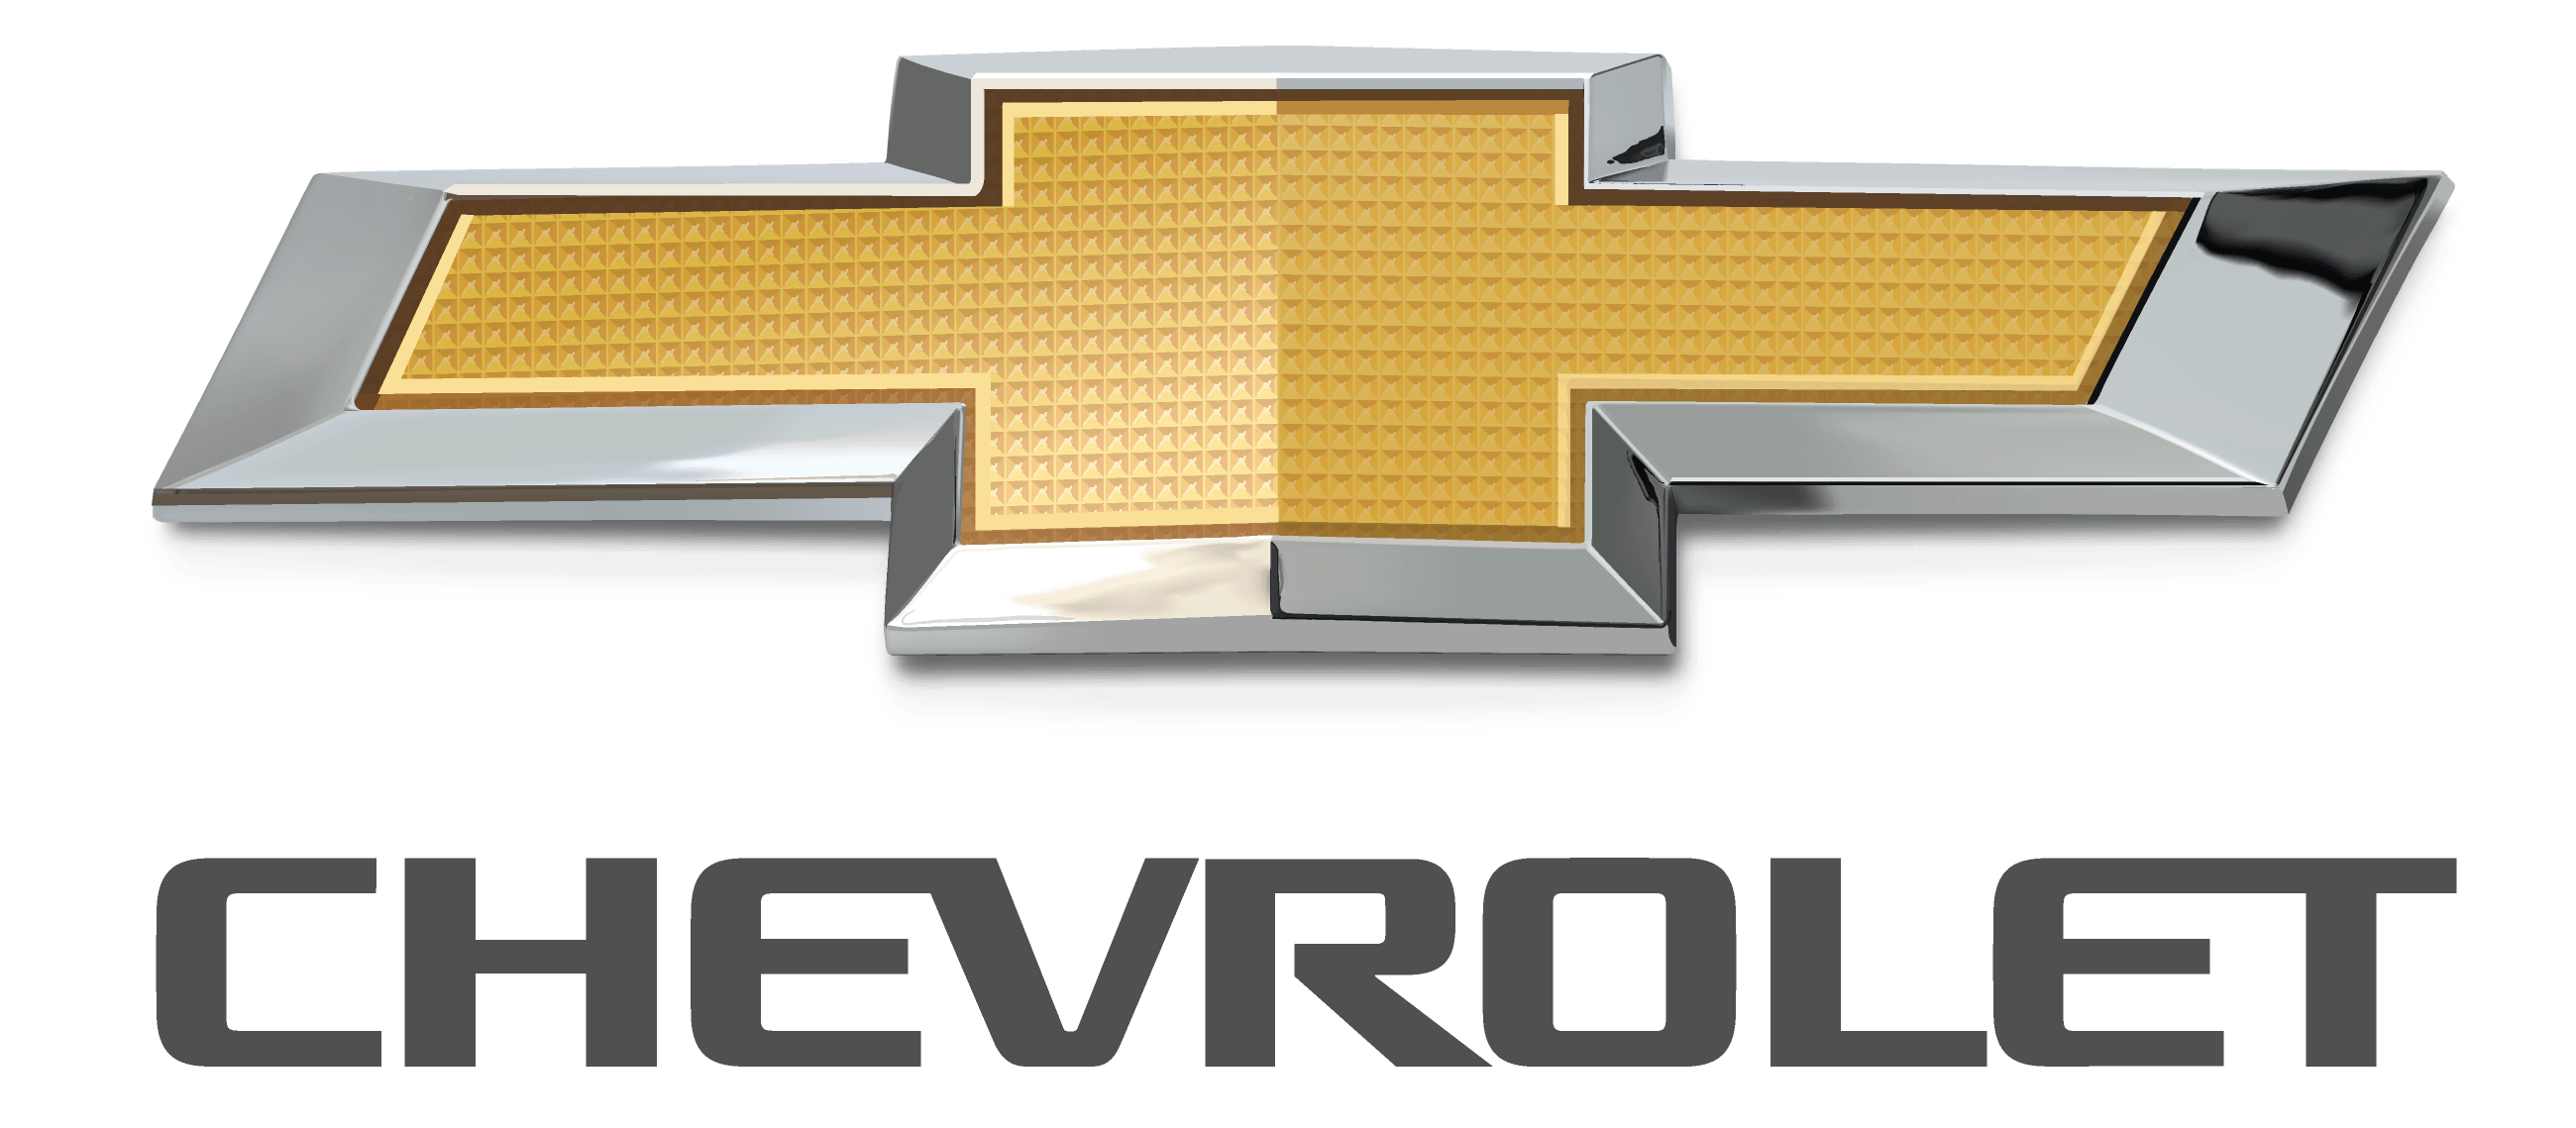 Chevrolet Car Logo - Chevrolet Logo PNG Transparent Background Download - DIY Logo Designs